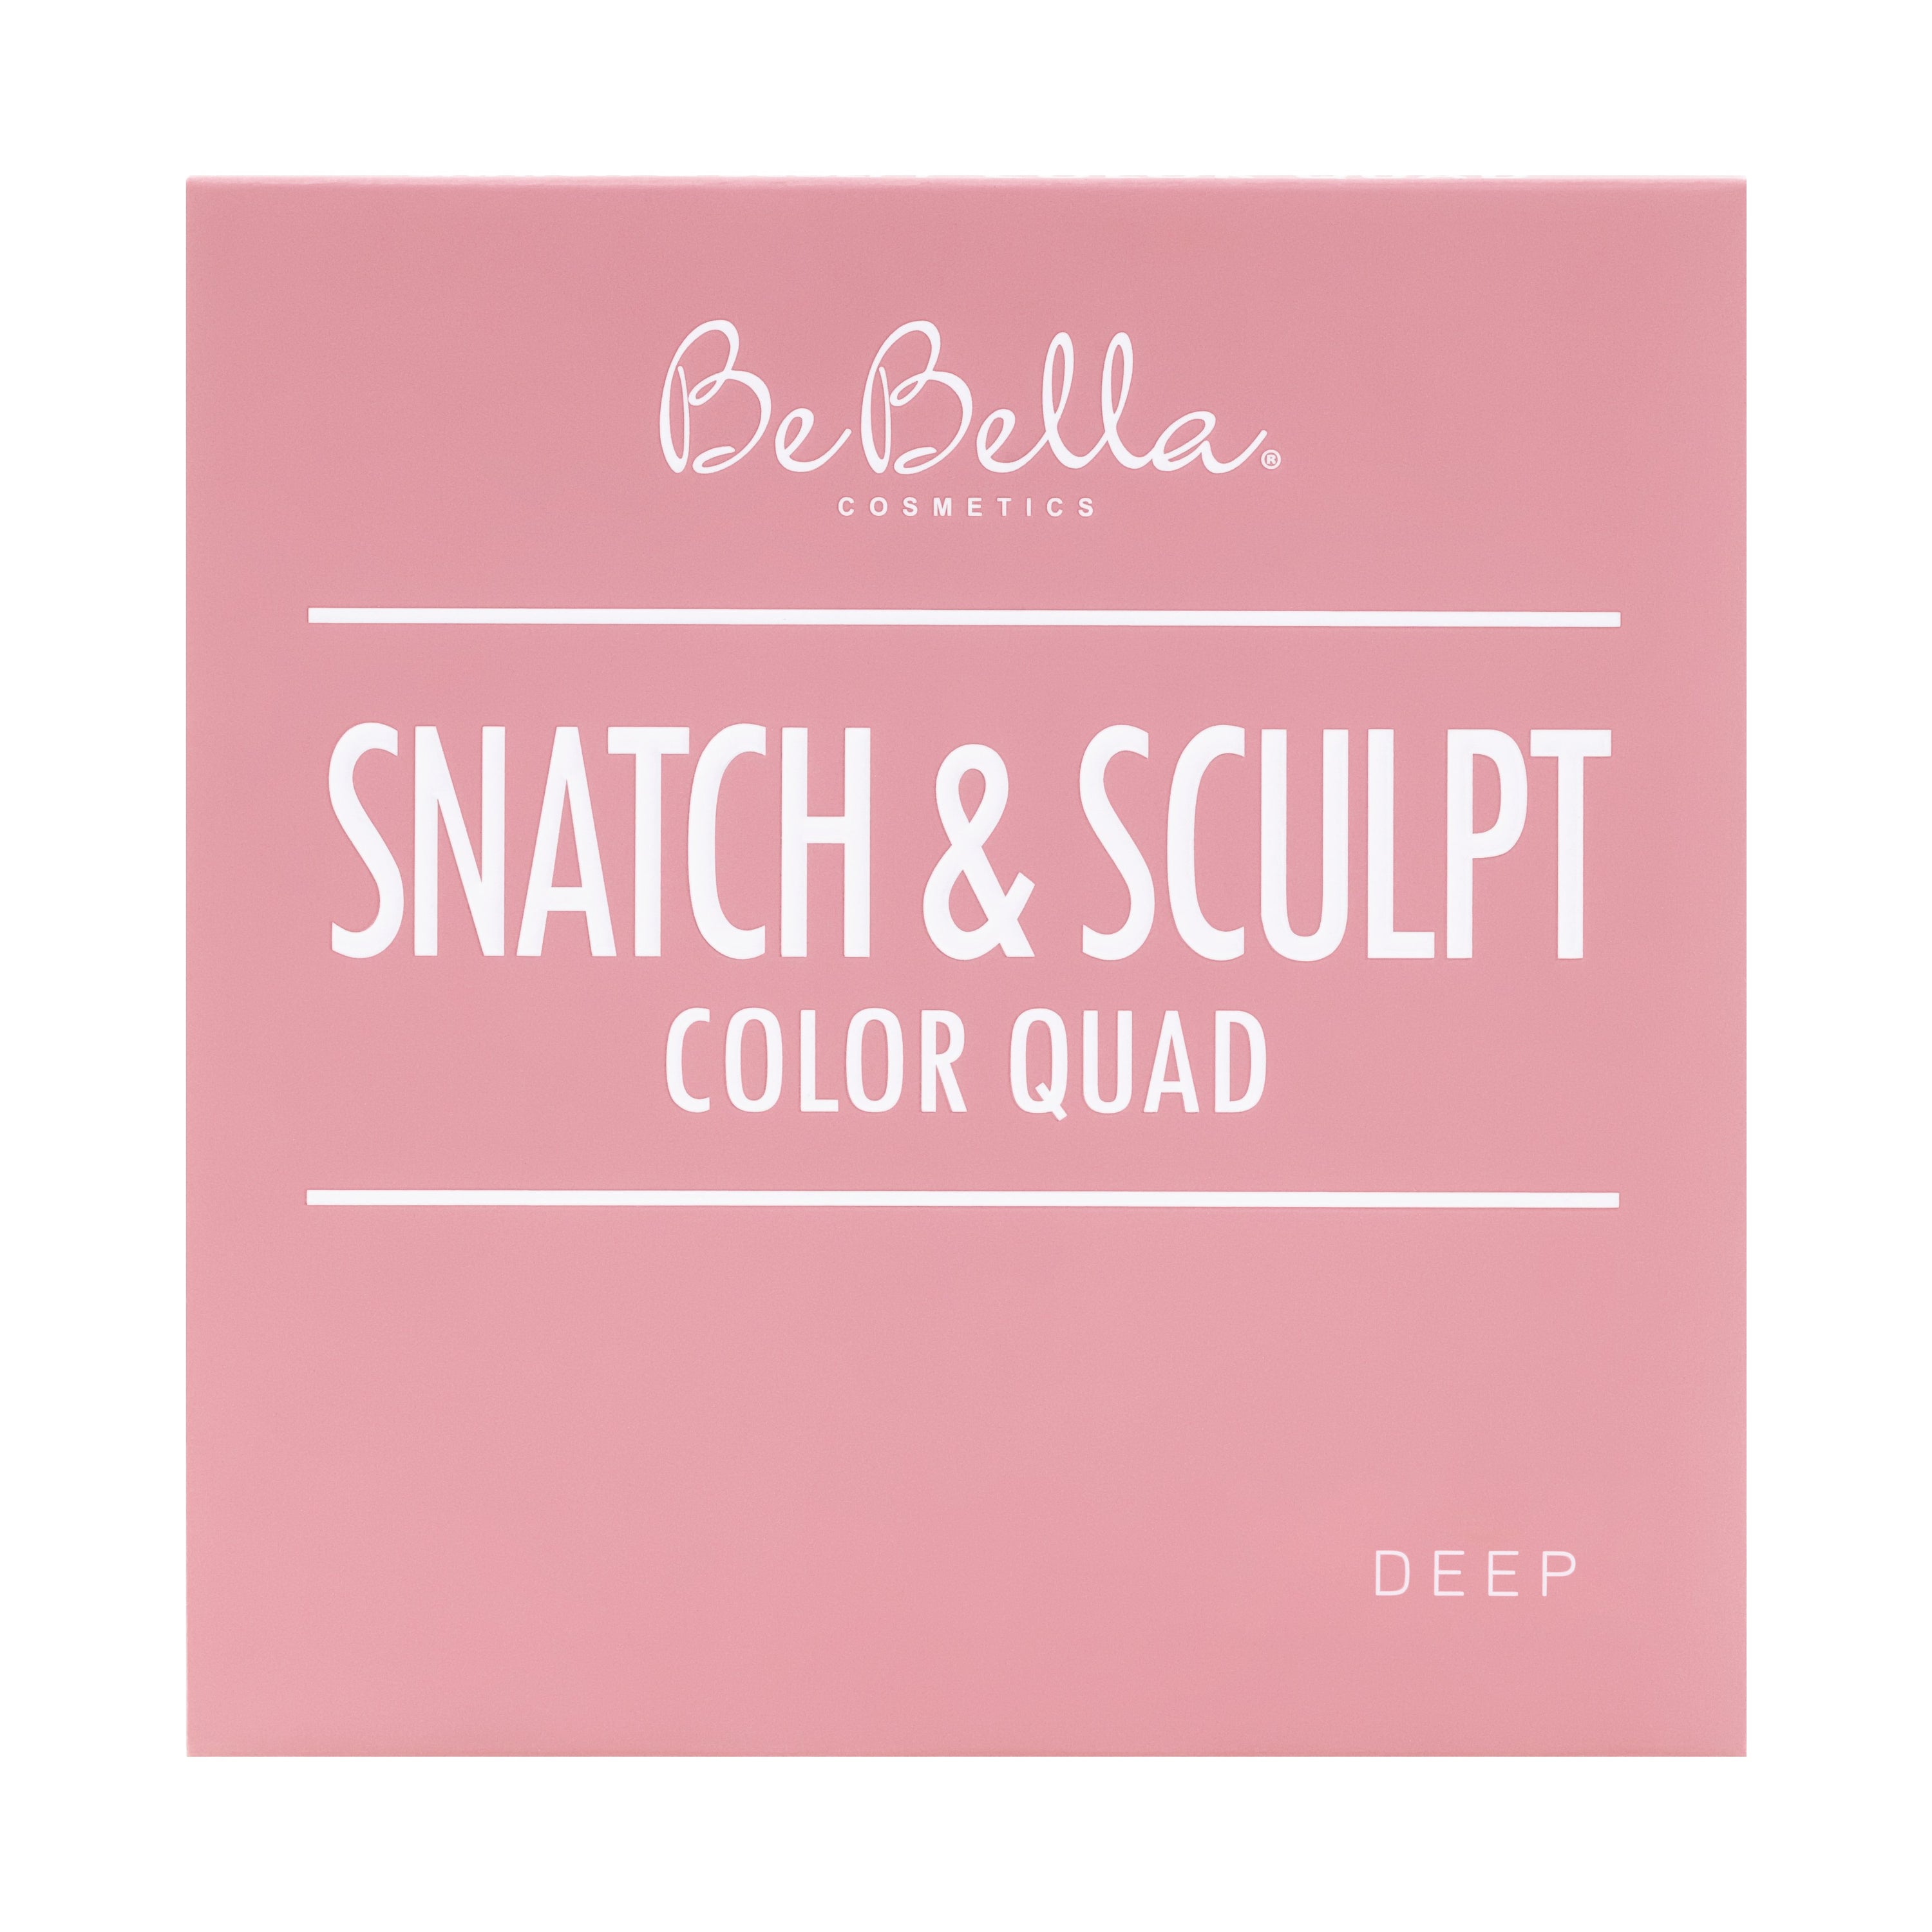 BeBella Cosmetics - Snatch & Sculpt Color Quad Palette Deep